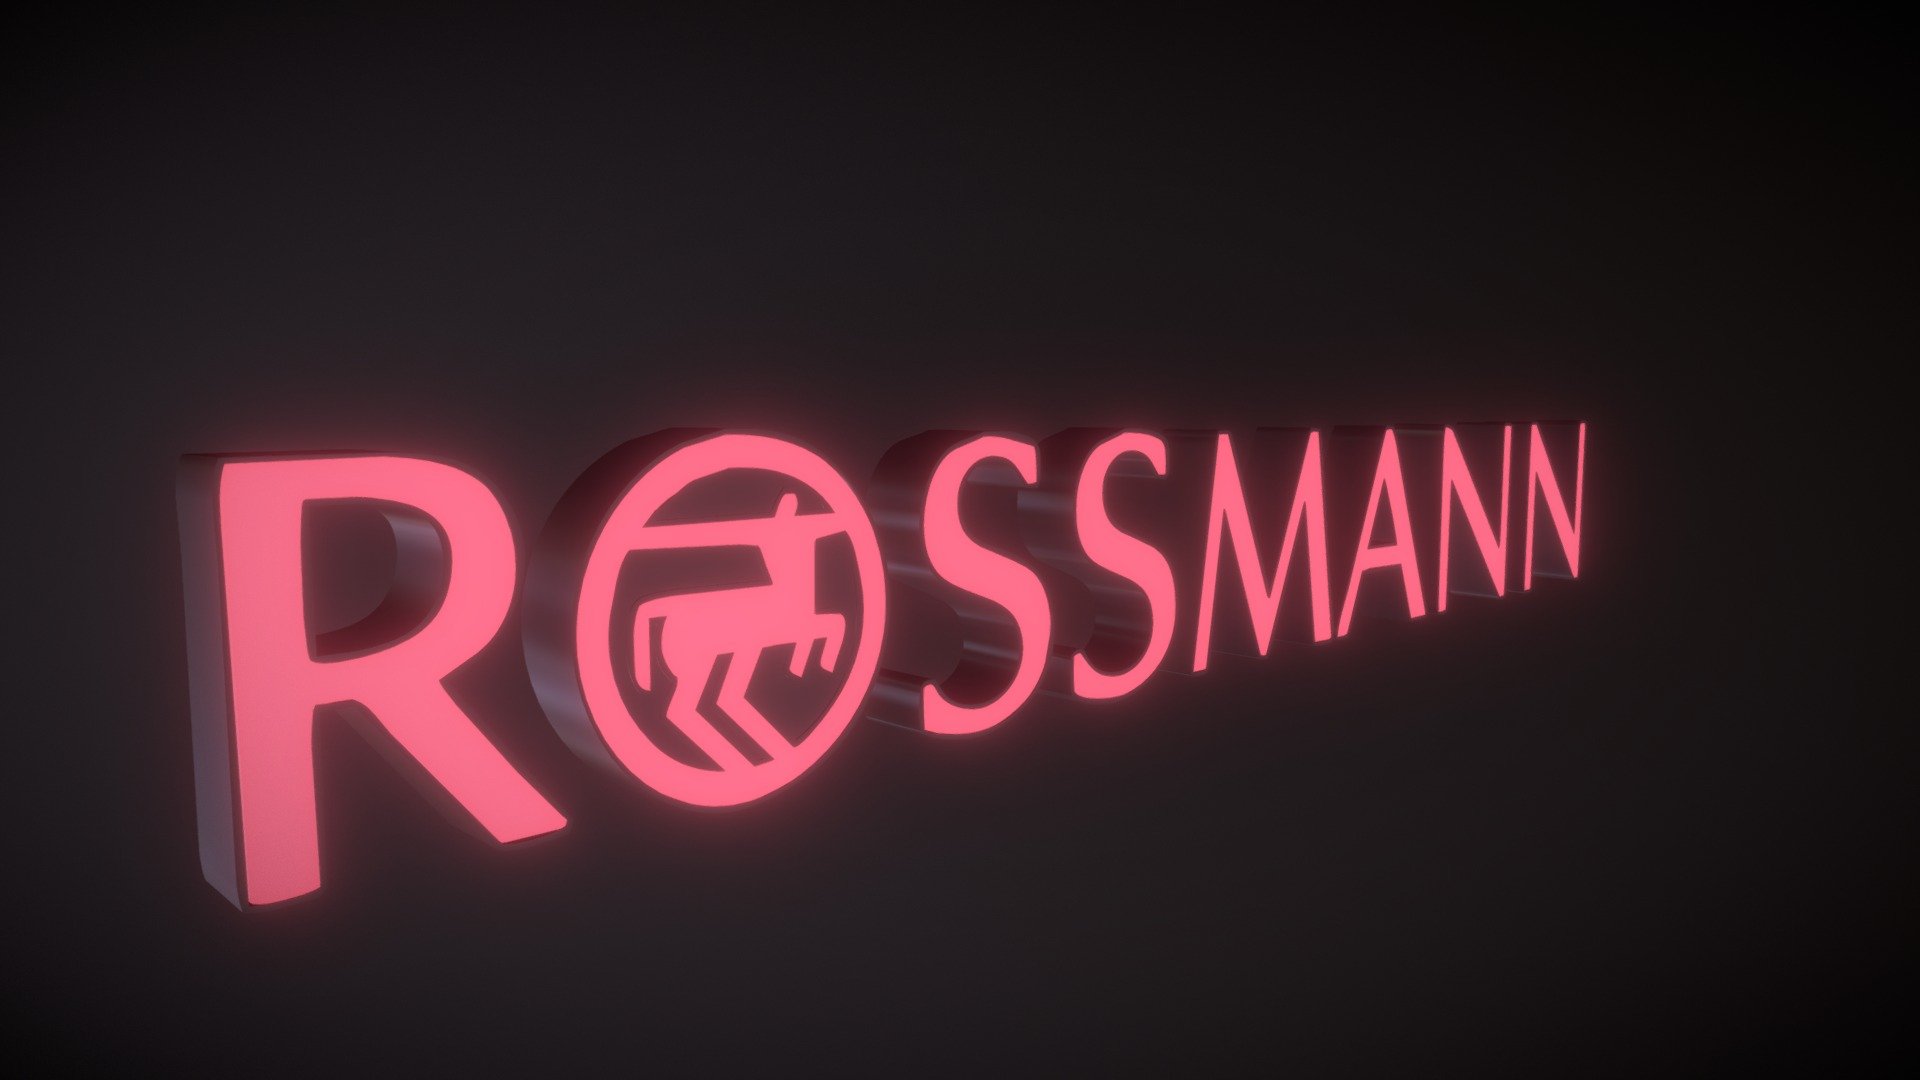 Rossmann @night - 3D model by aldikiller 3d model